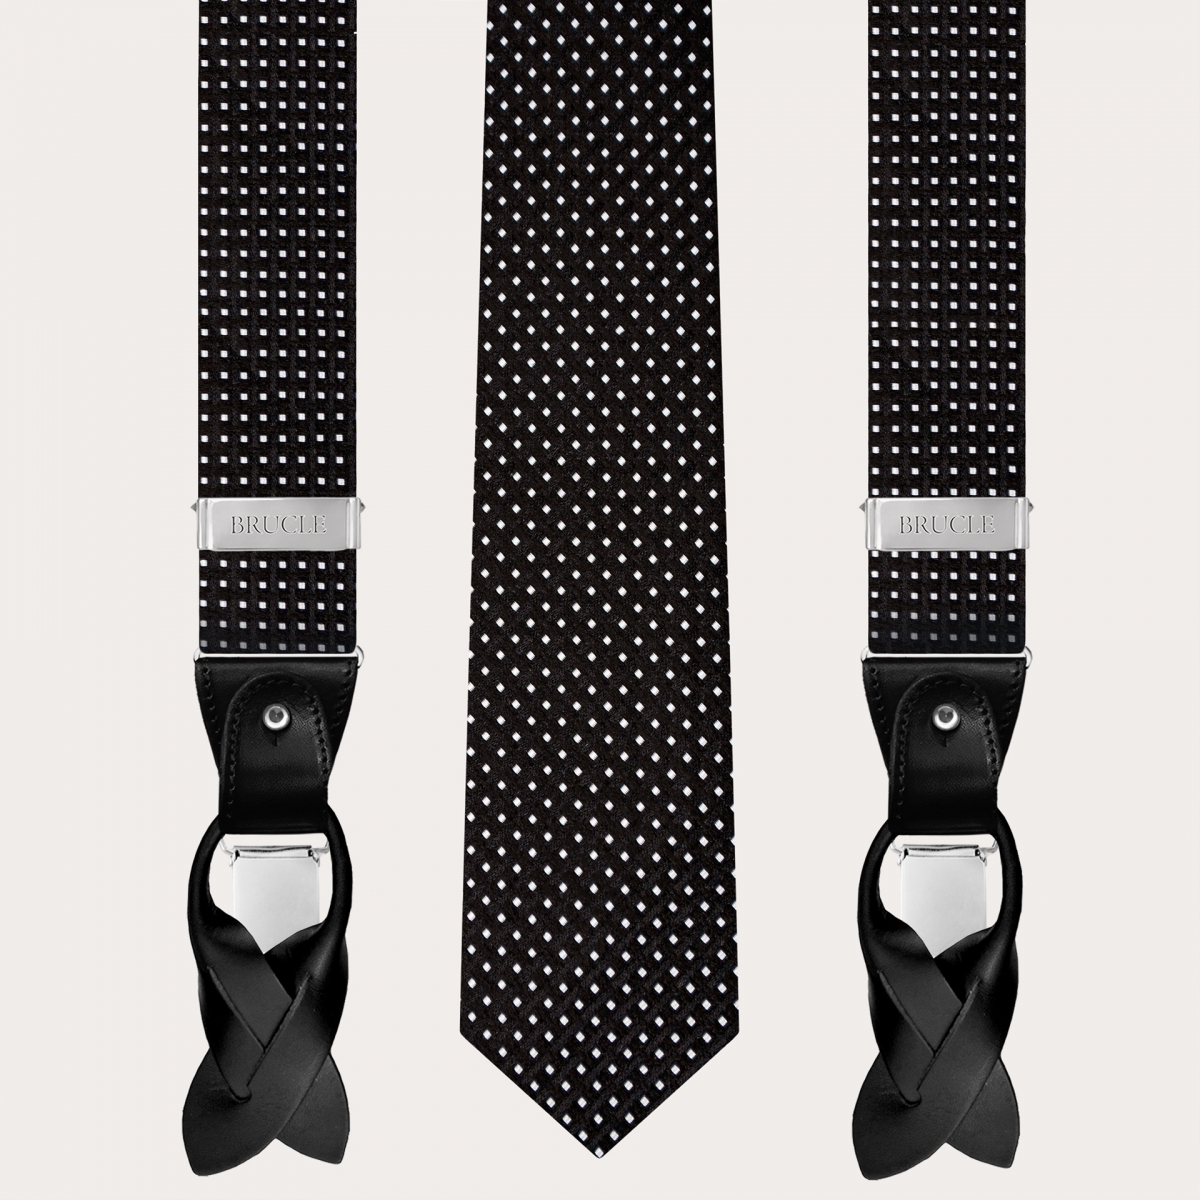 Abgestimmte Hosenträger und Krawatte aus Seide, schwarz Punktmuster